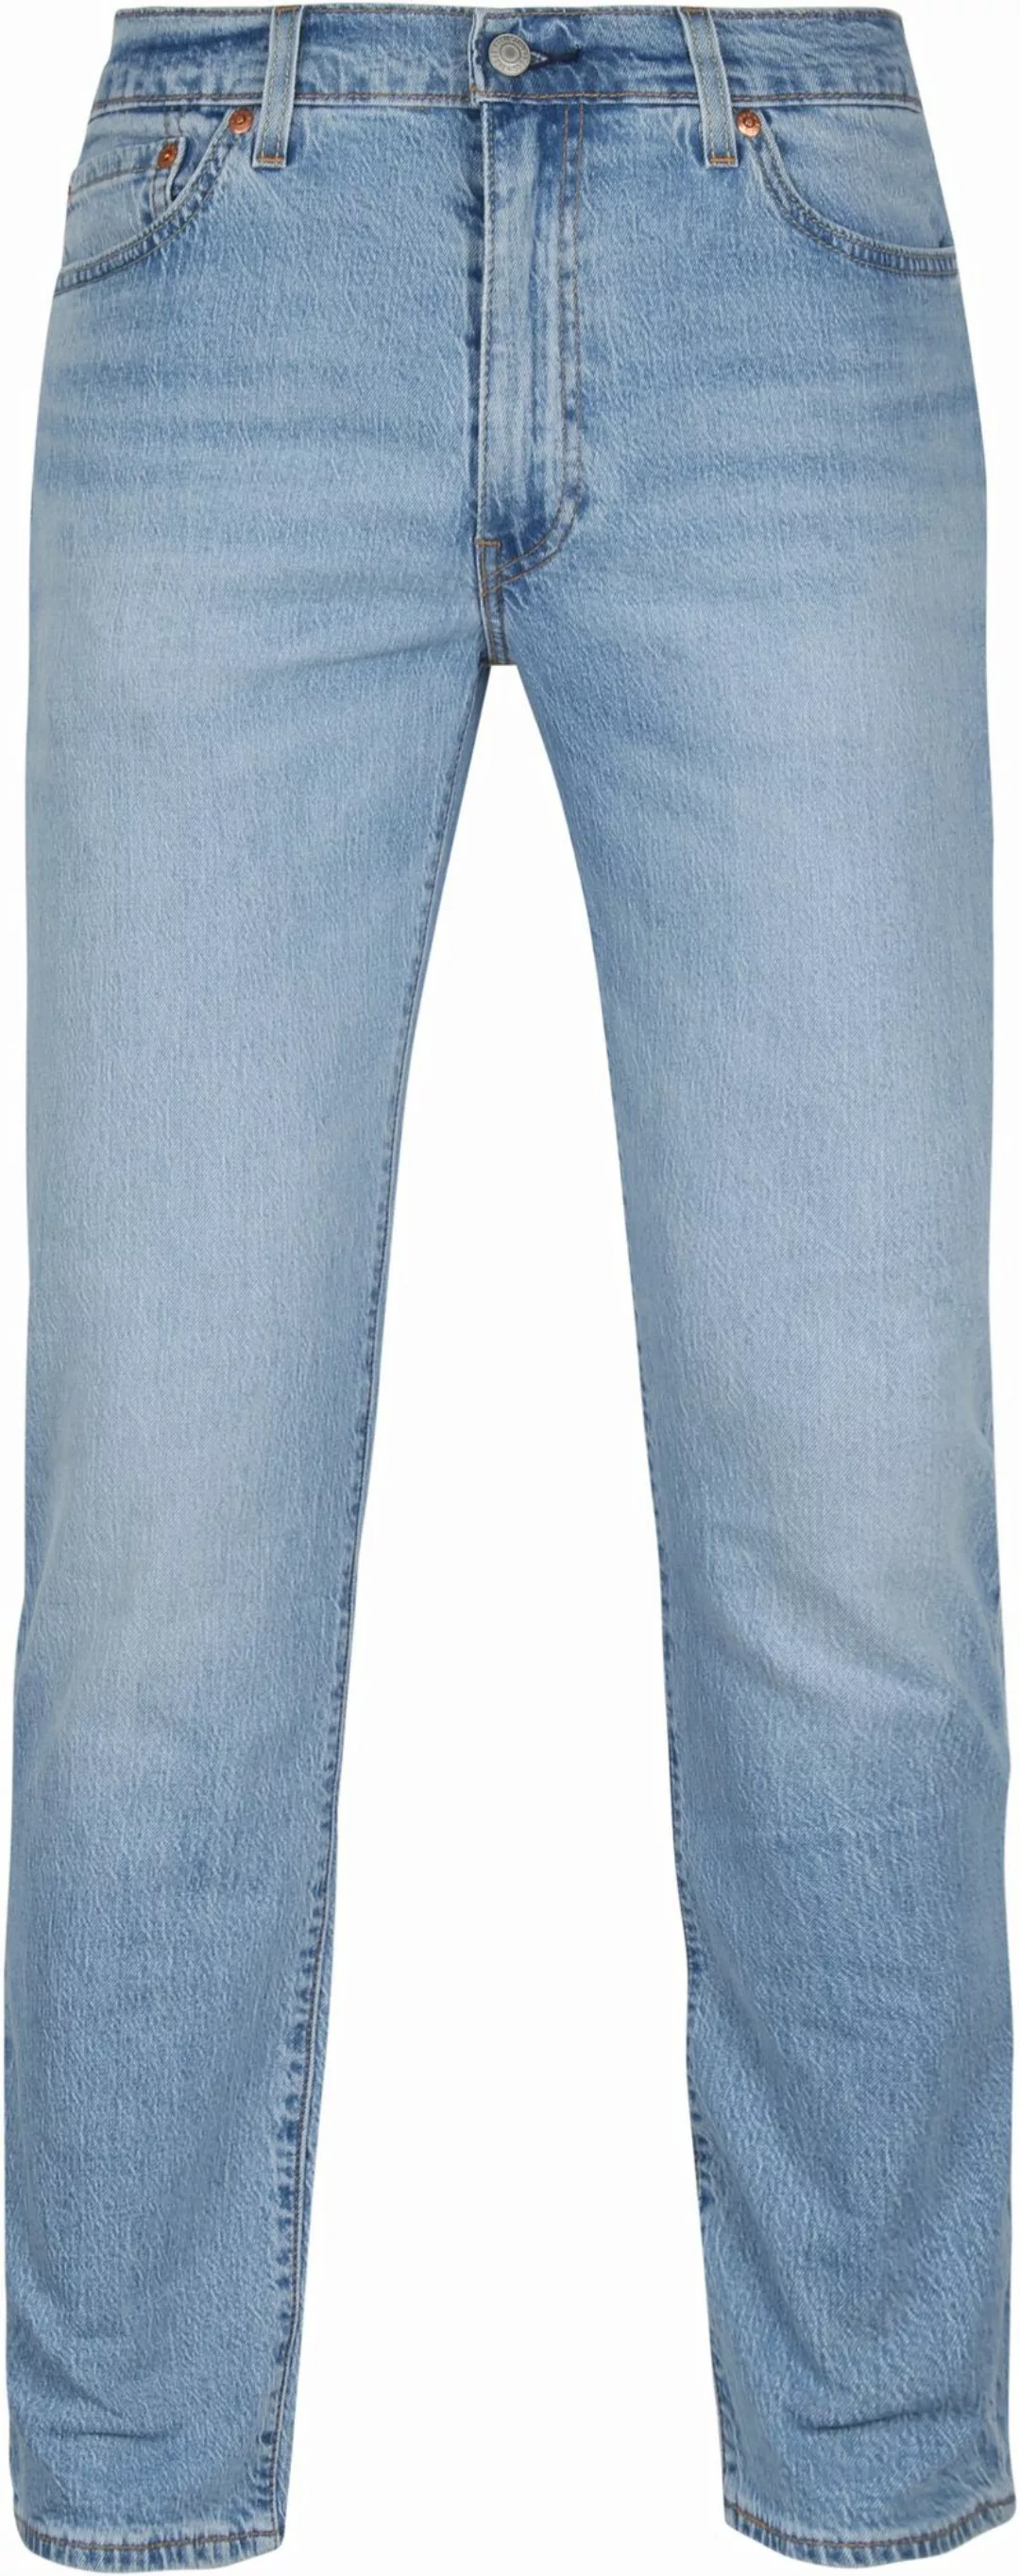 Levi's 511 Jeanshose Blau - Größe W 31 - L 34 günstig online kaufen